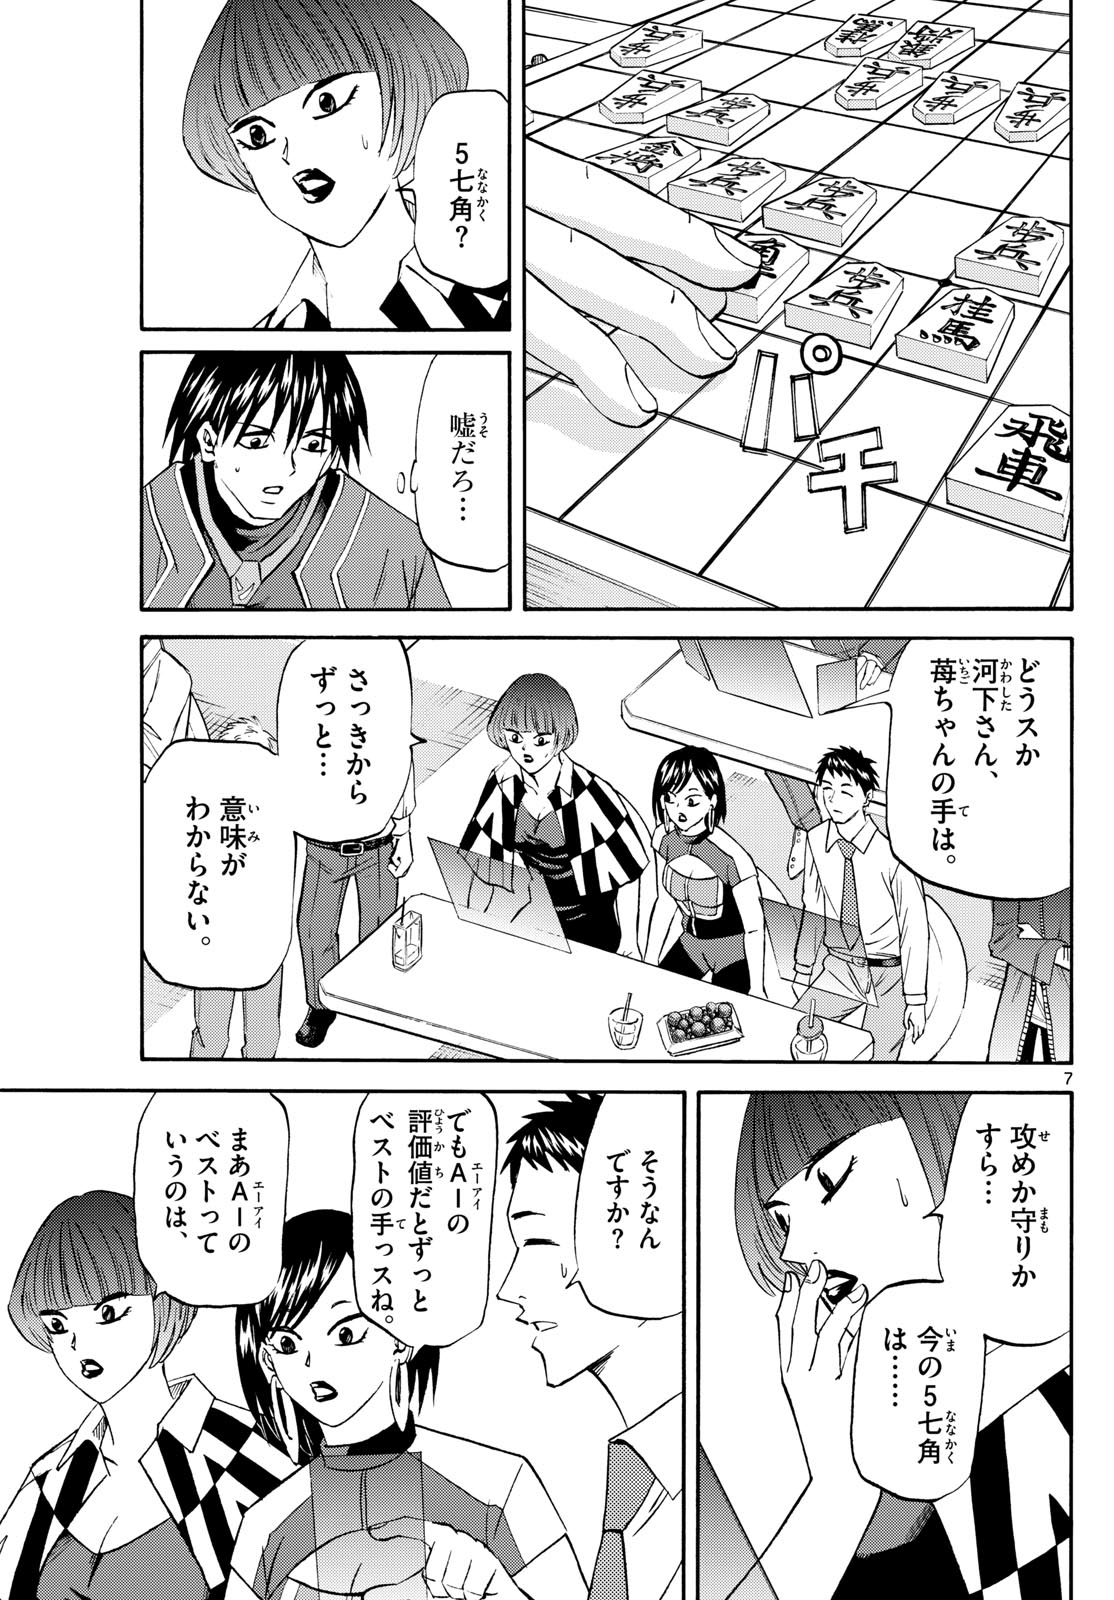 Tatsu to Ichigo - Chapter 198 - Page 7